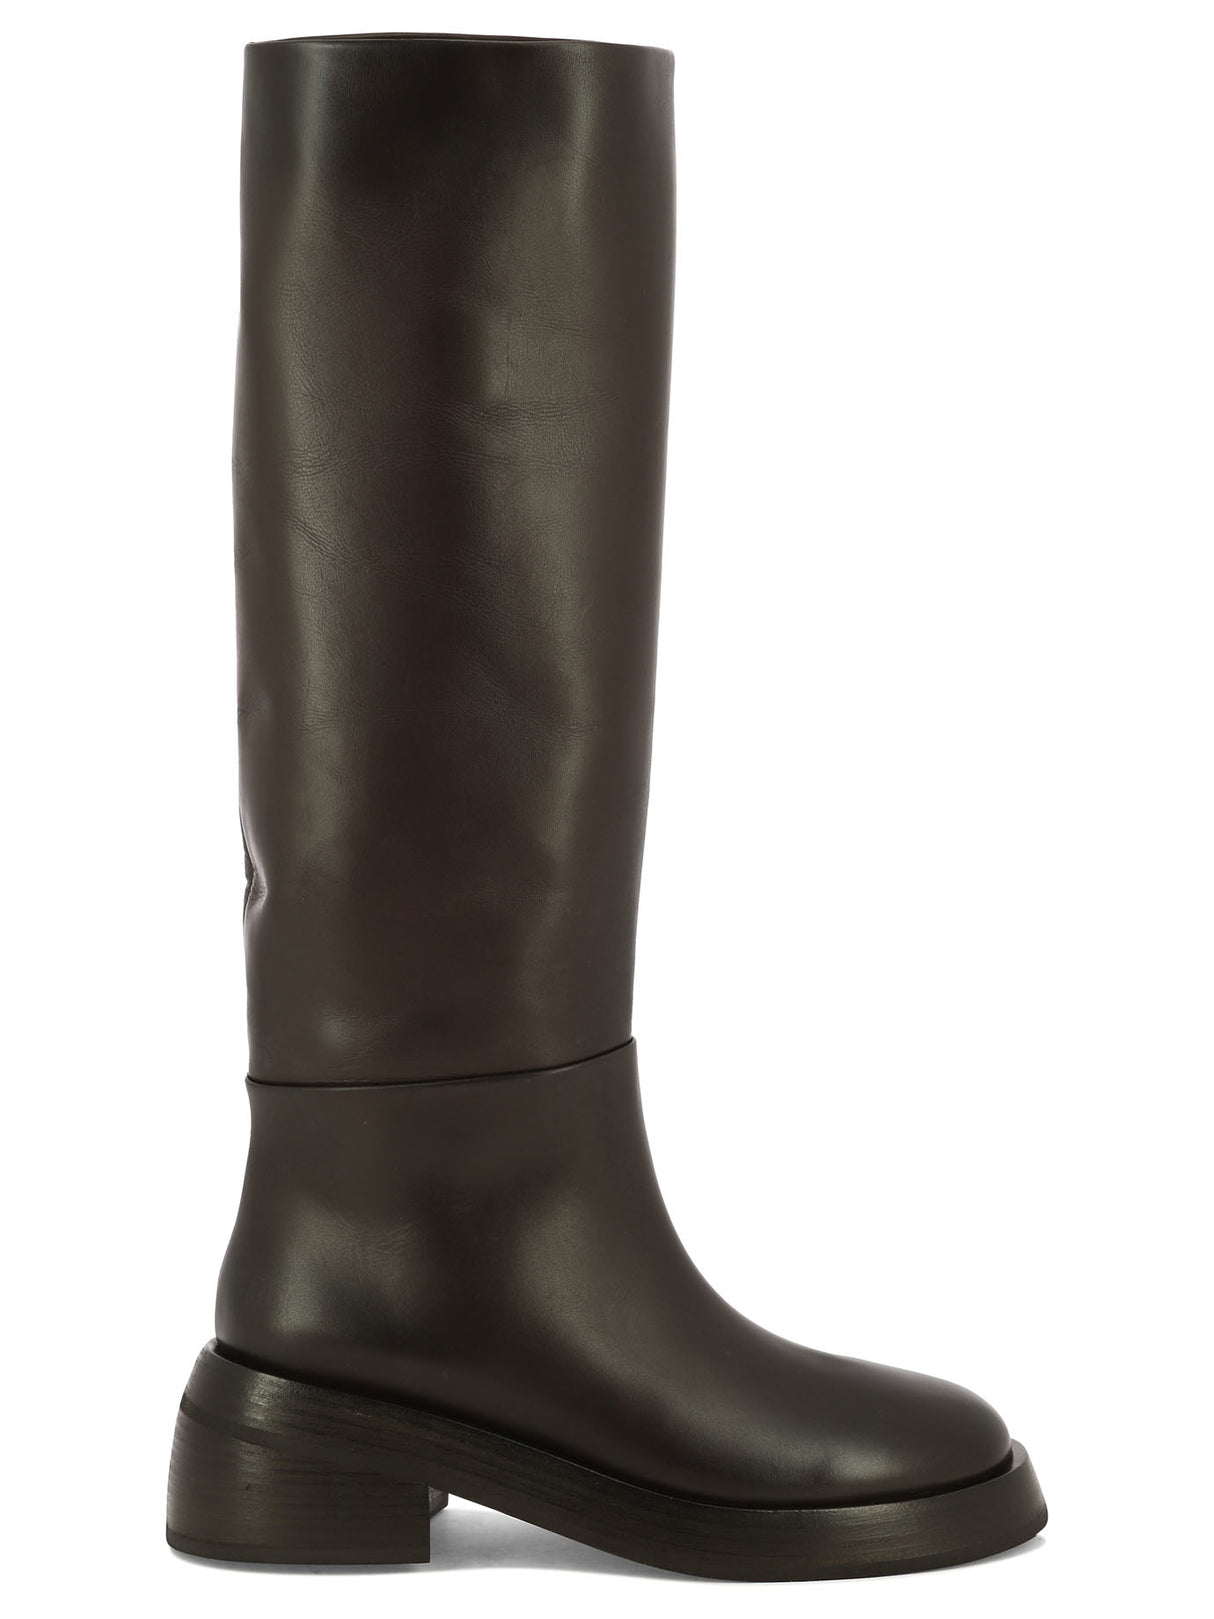 Brown Pull-On Boots cho Nữ từ Bộ Sưu Tập FW24